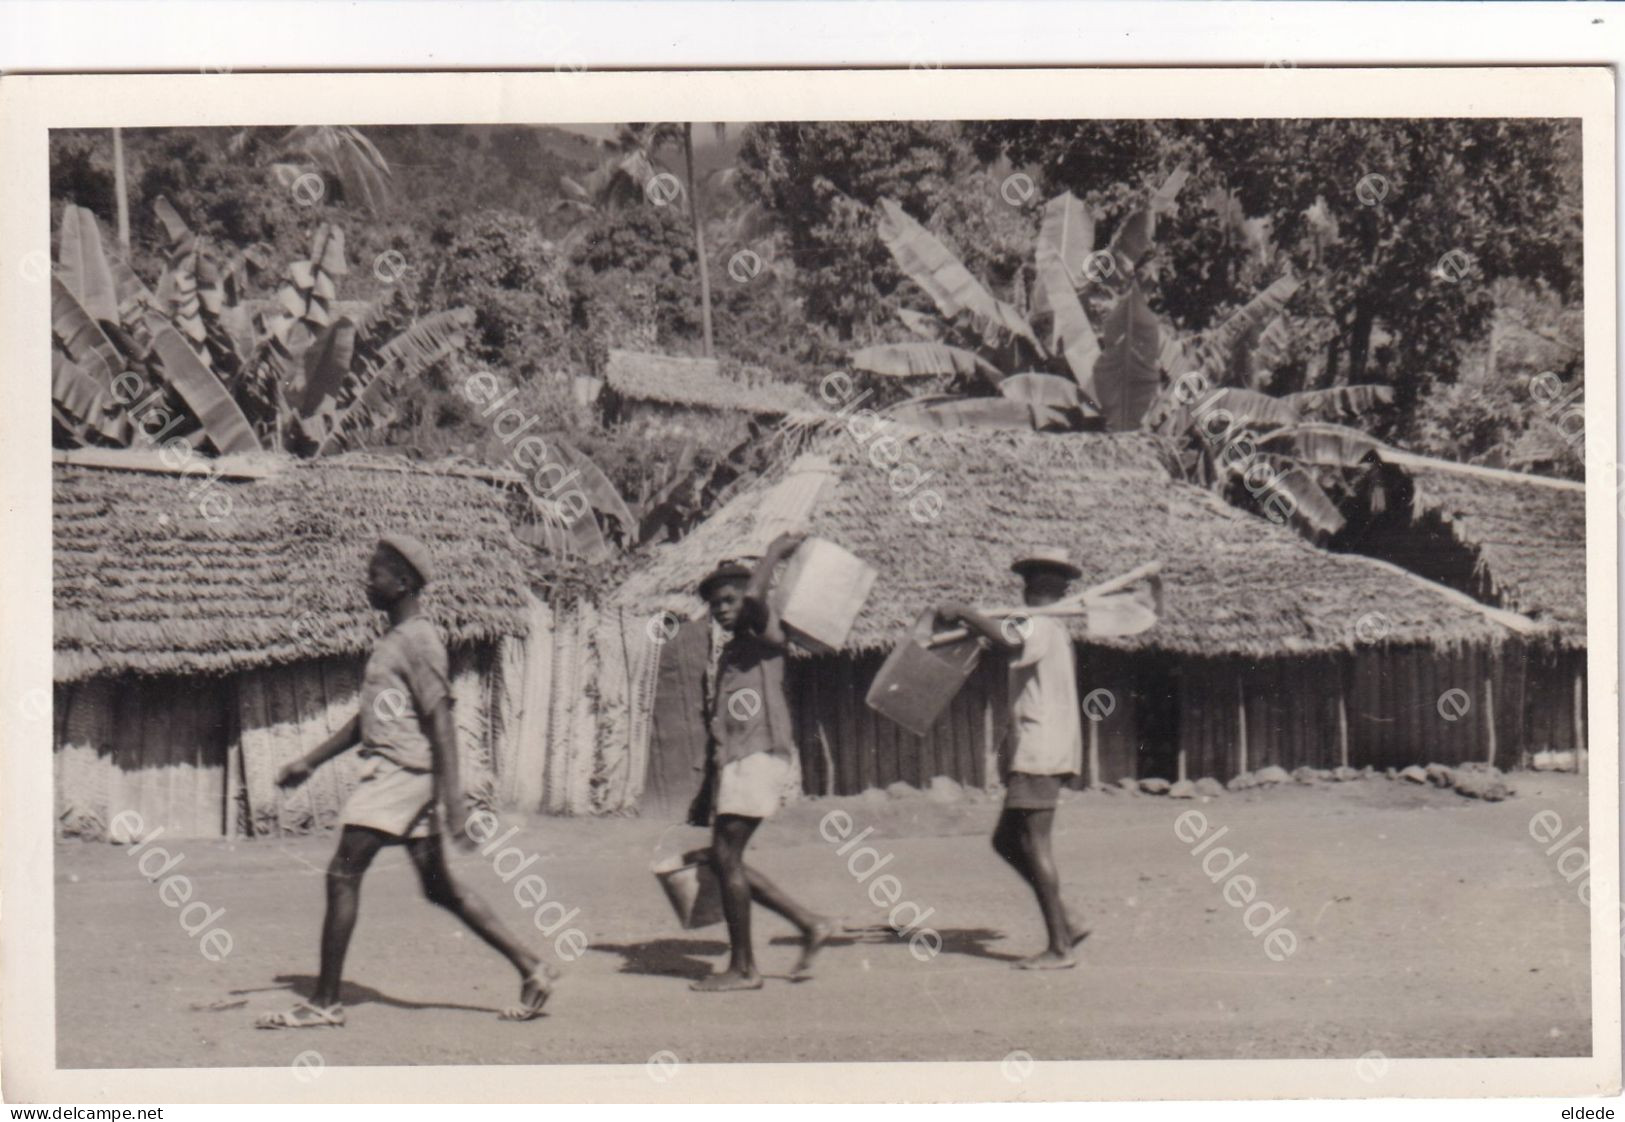 Comores Comoros Real Photo  Grande Comore Natives Near Huts  Ecrite Mutsamudou 1961 Non Timbrée - Komoren